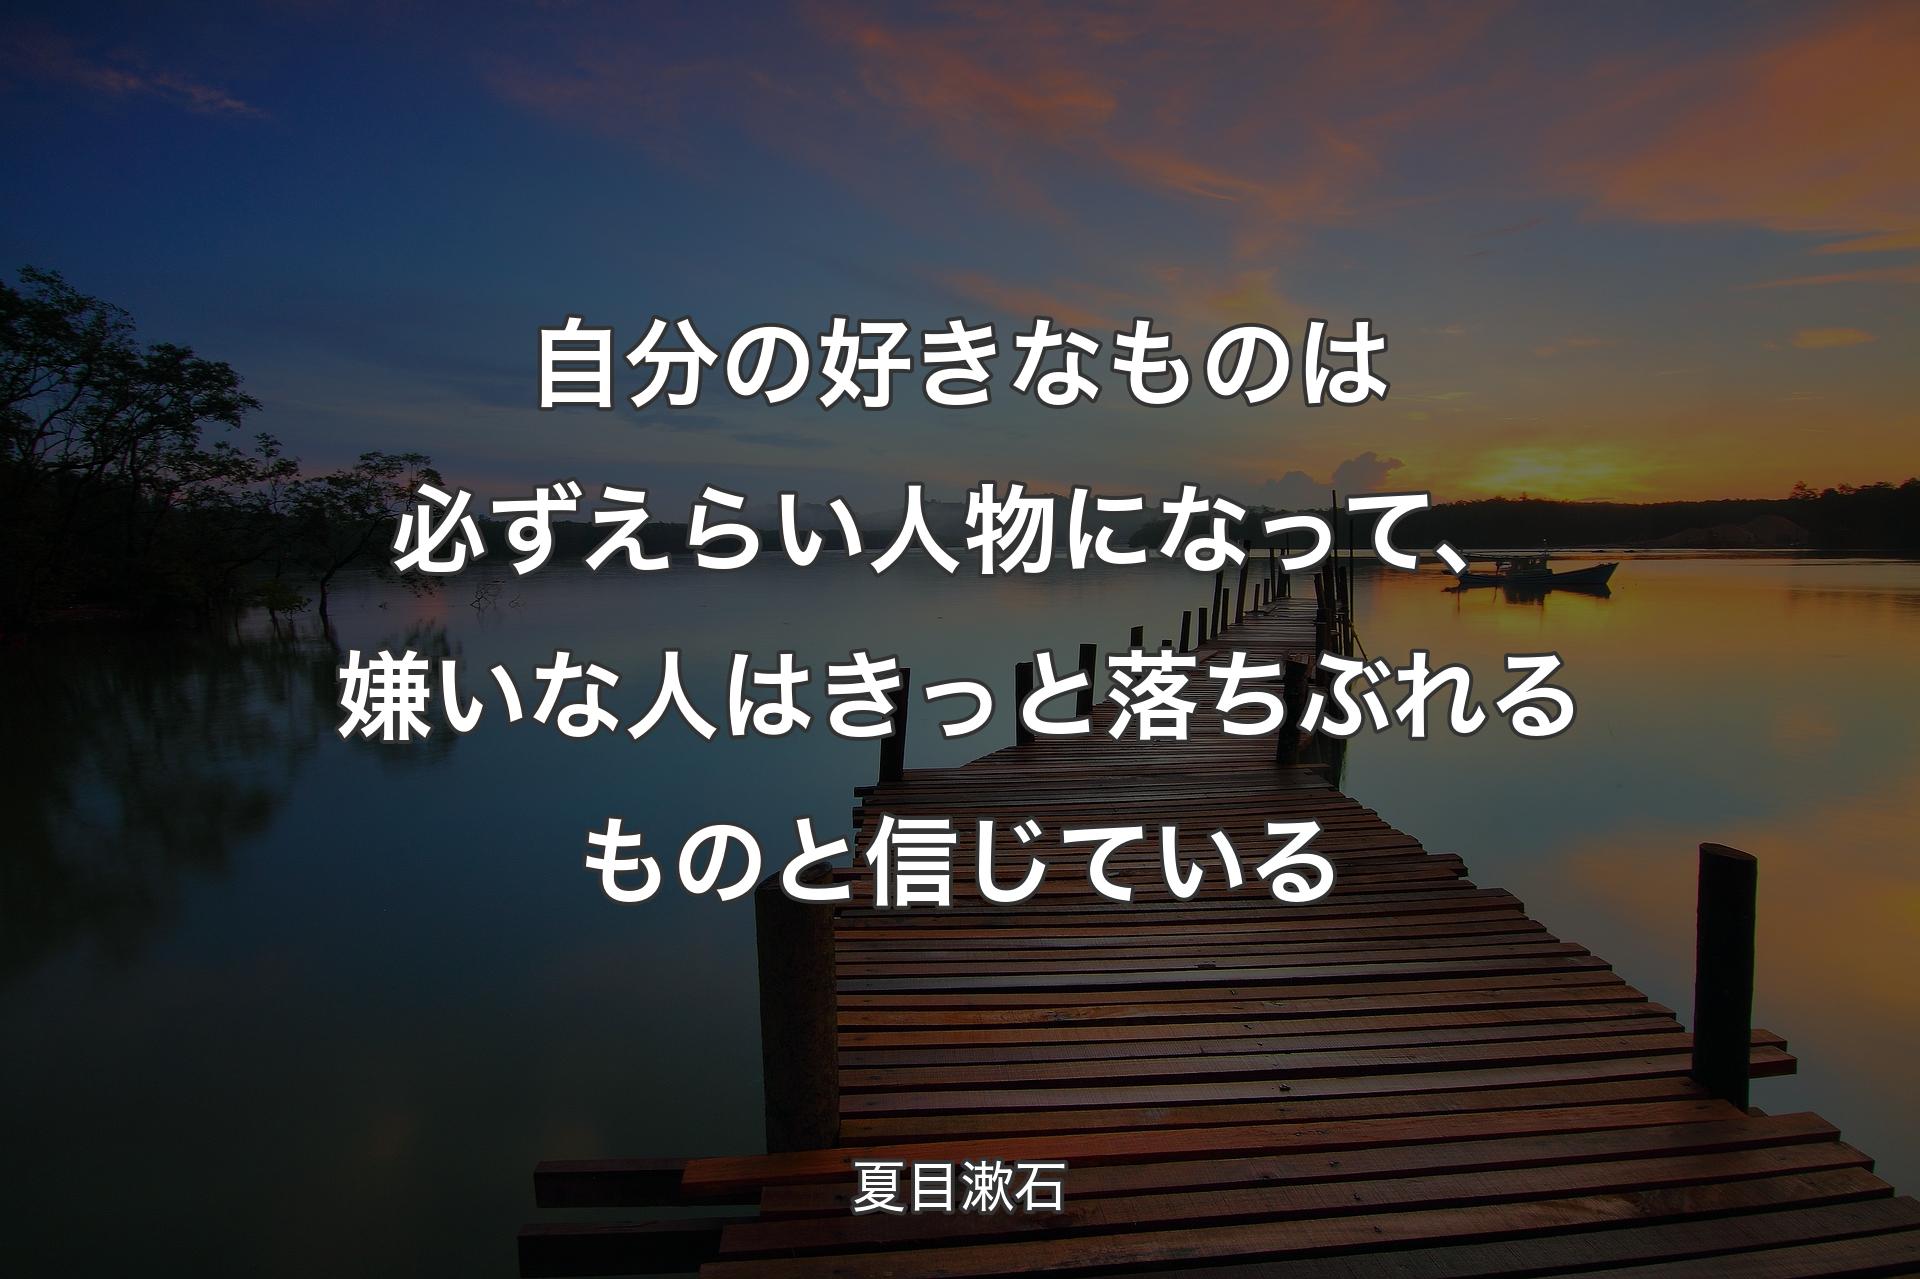 【背景3】自分の好きなものは必ずえらい人物になって、嫌�いな人はきっと落ちぶれるものと信じている - 夏目漱石